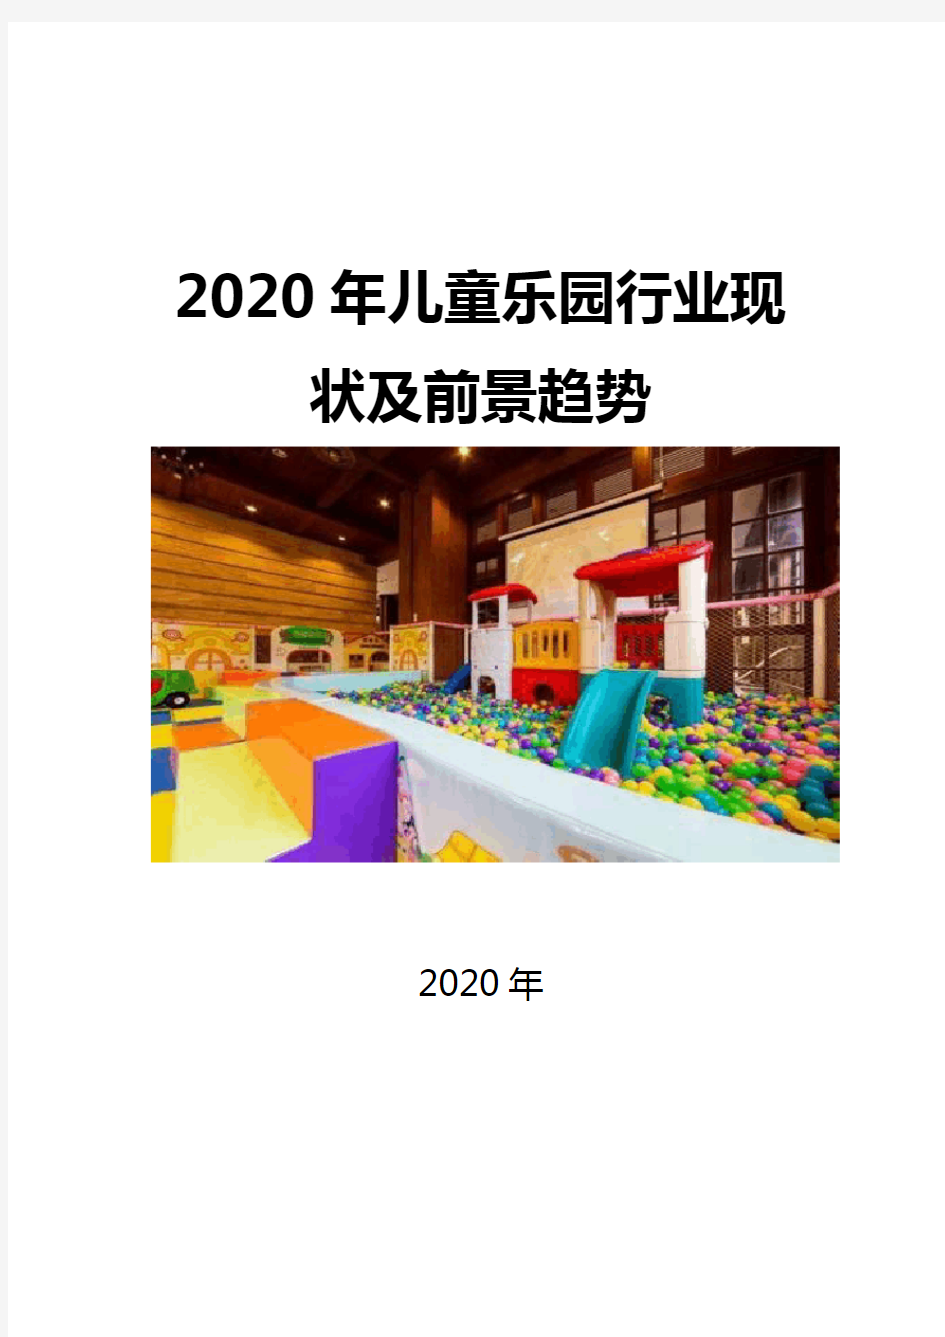 2020儿童乐园行业现状及前景趋势